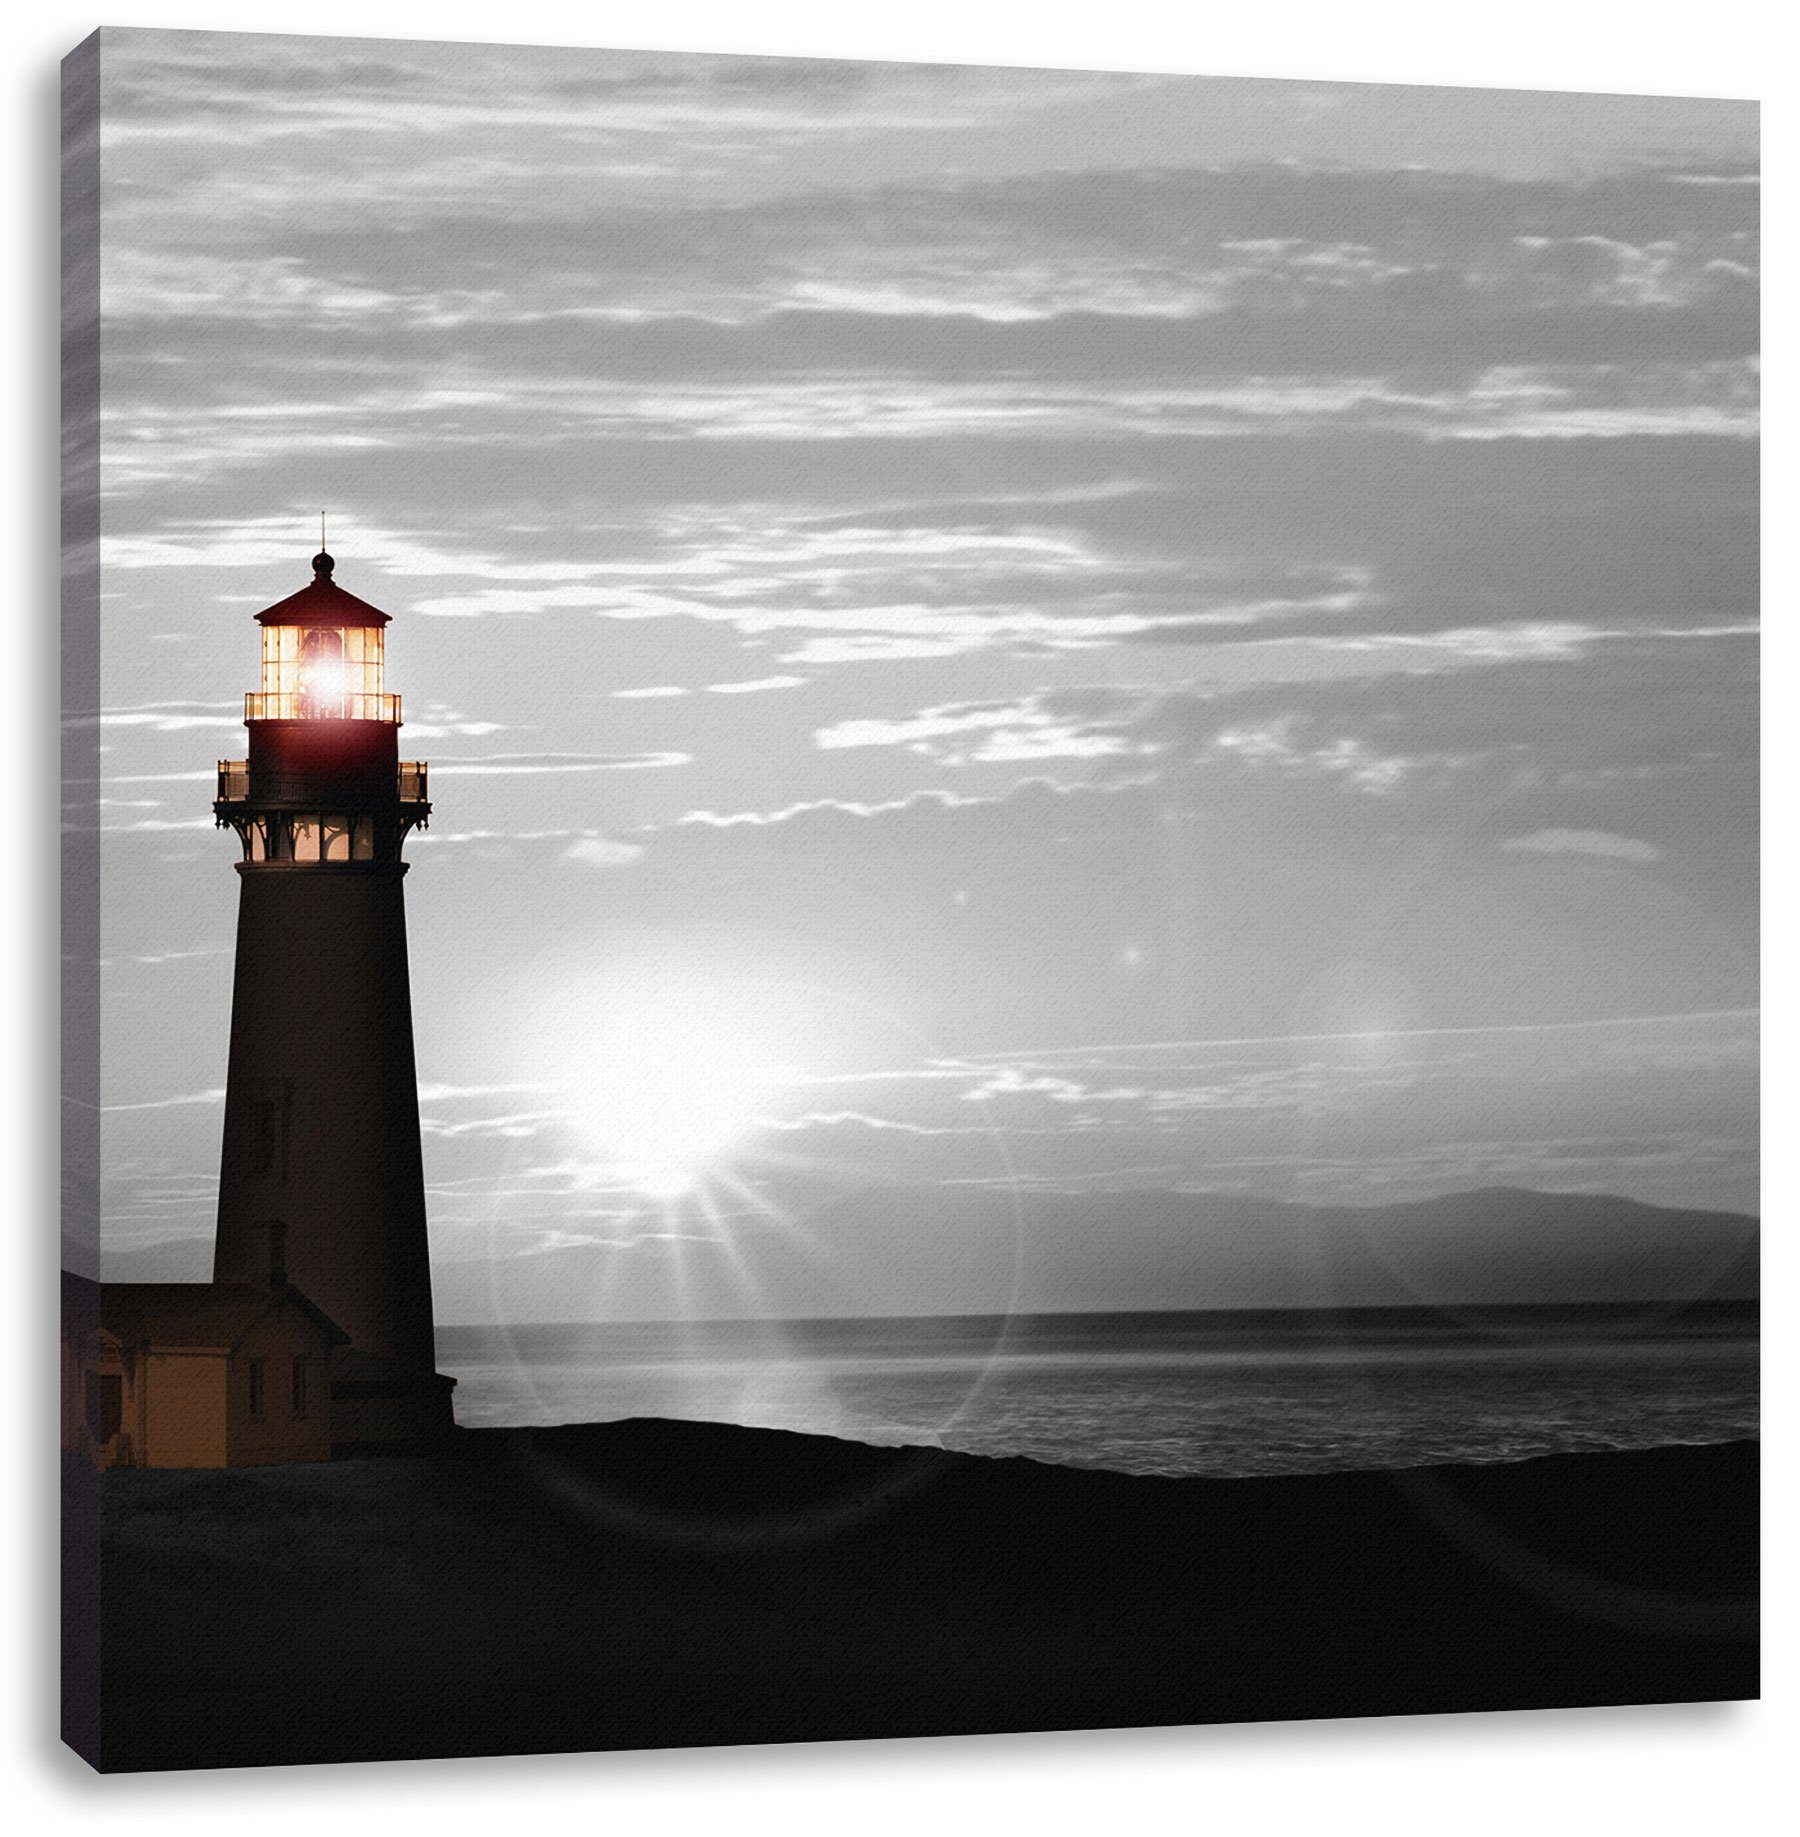 Pixxprint Leinwandbild Leuchtturm im Sonnenuntergang, Leuchtturm im Sonnenuntergang (1 St), Leinwandbild fertig bespannt, inkl. Zackenaufhänger